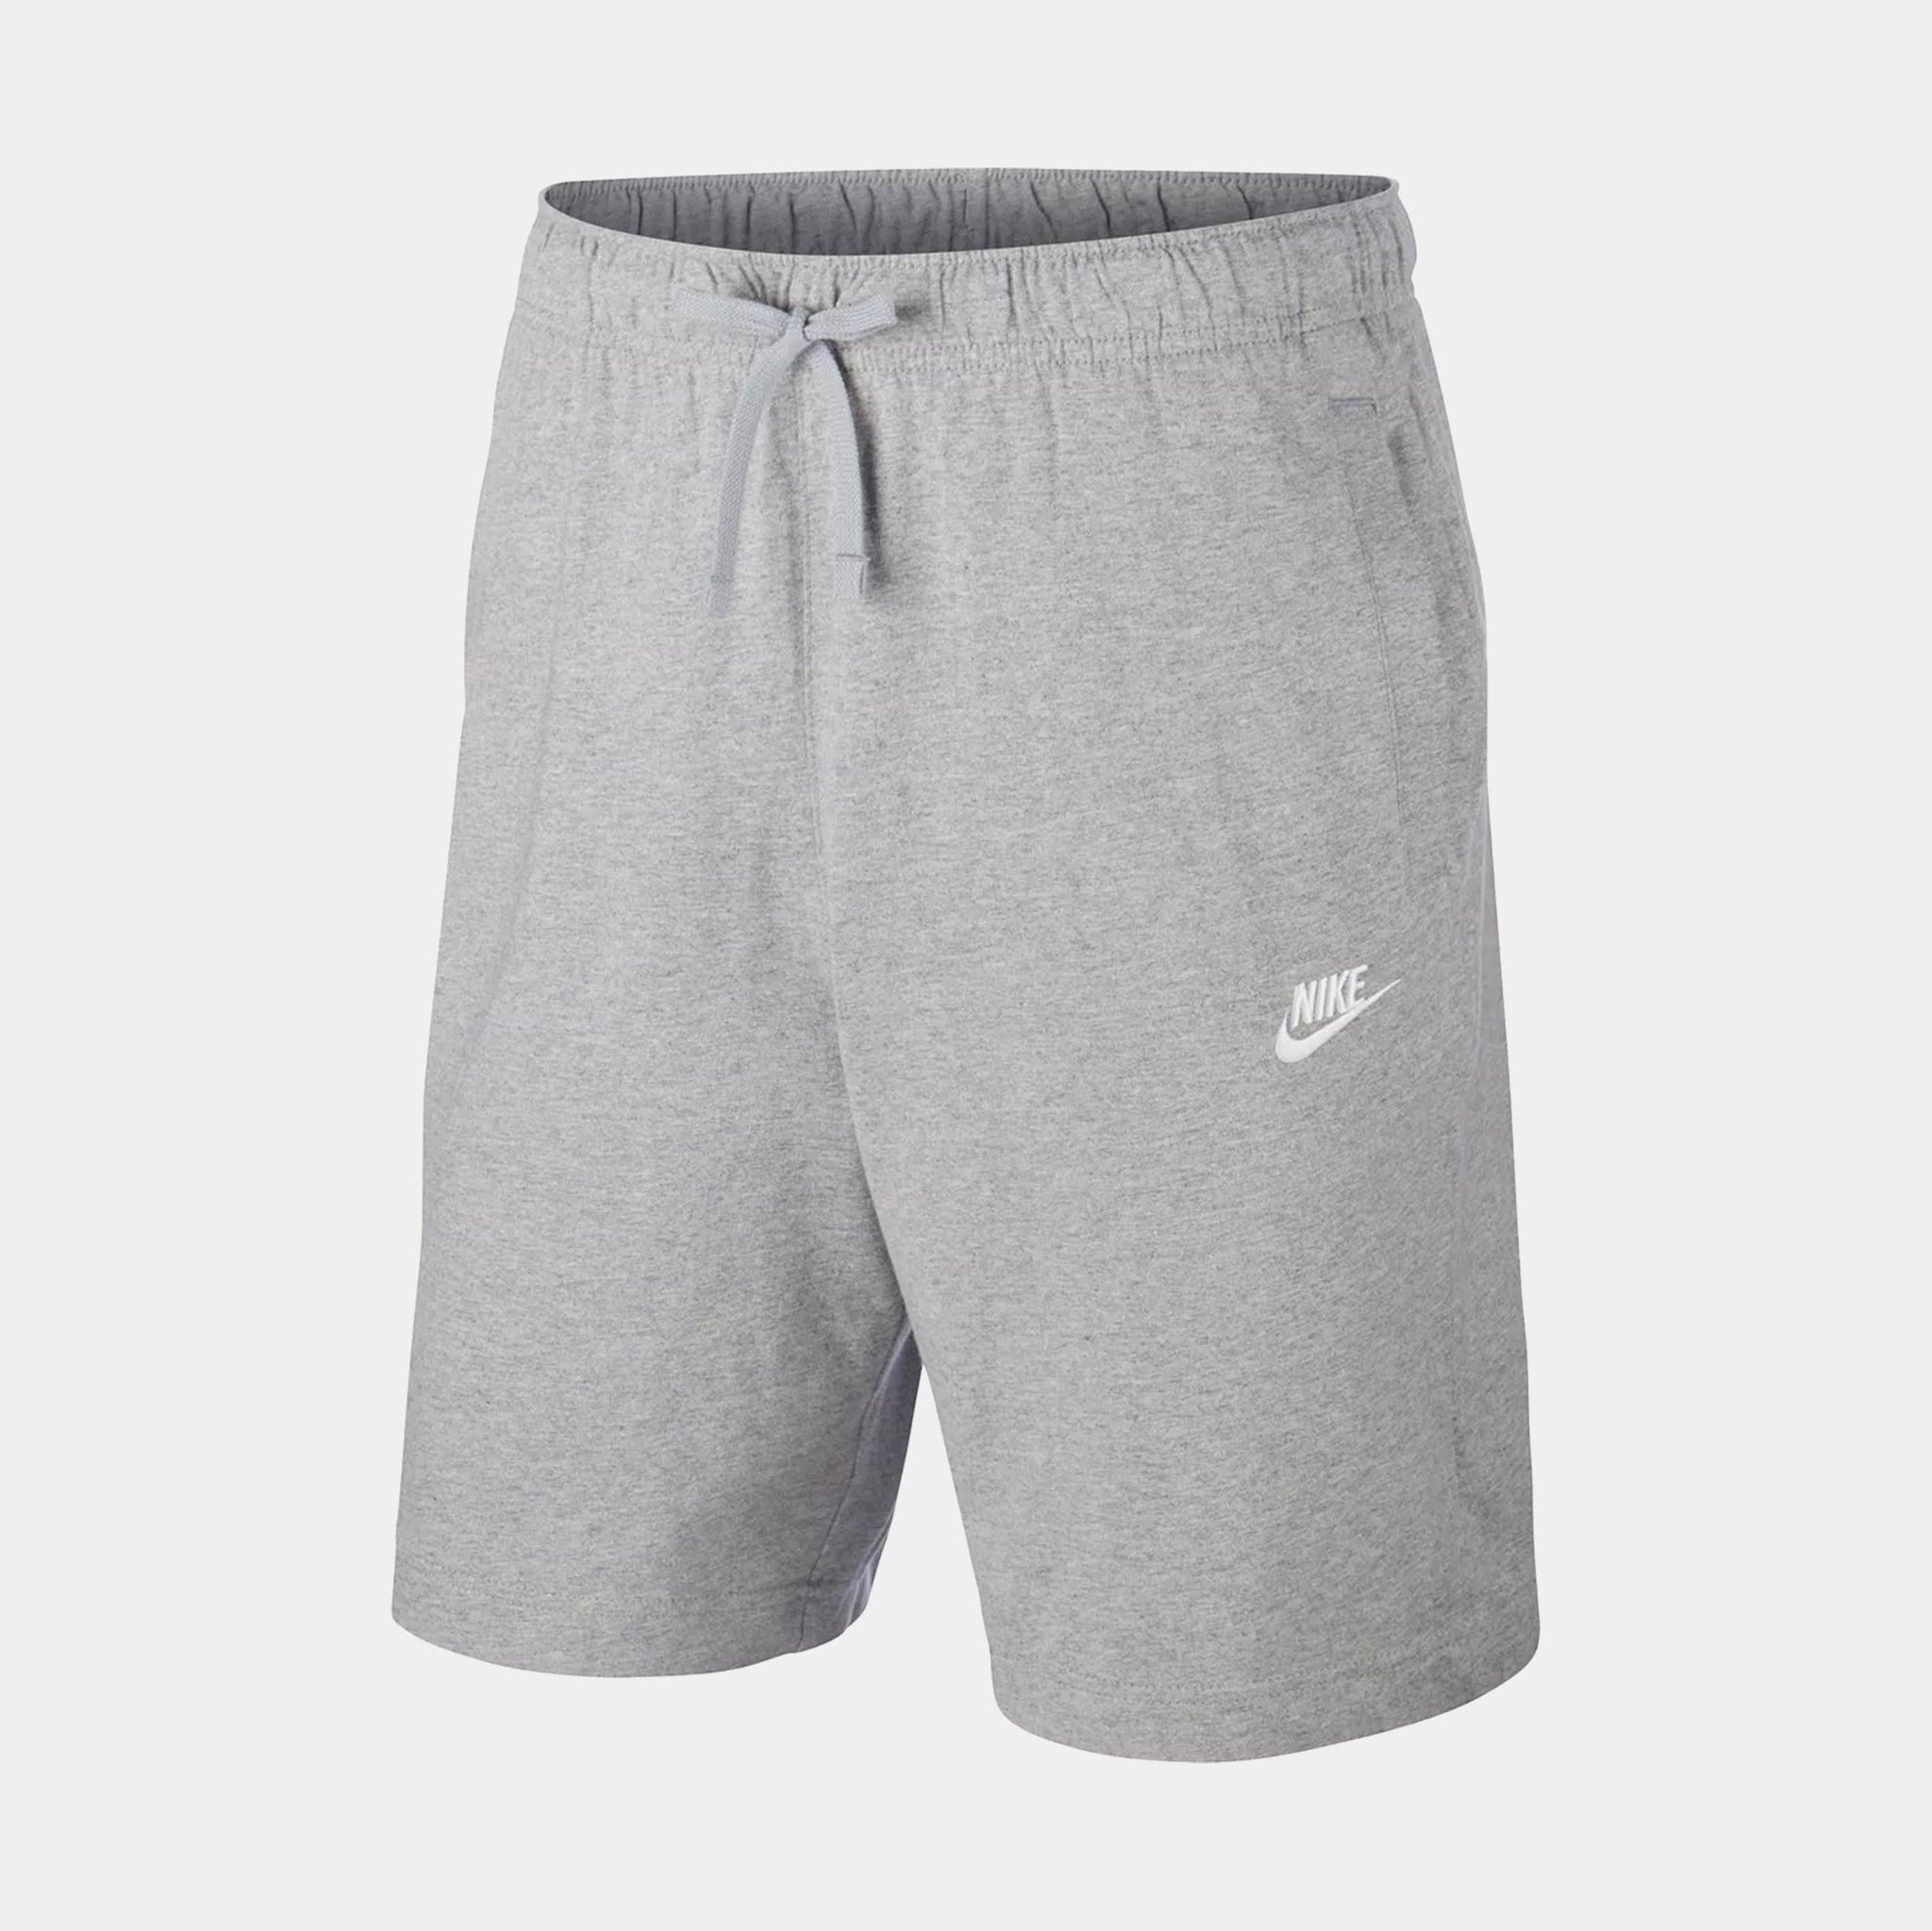 NSW Club Mens Shorts (Grey)